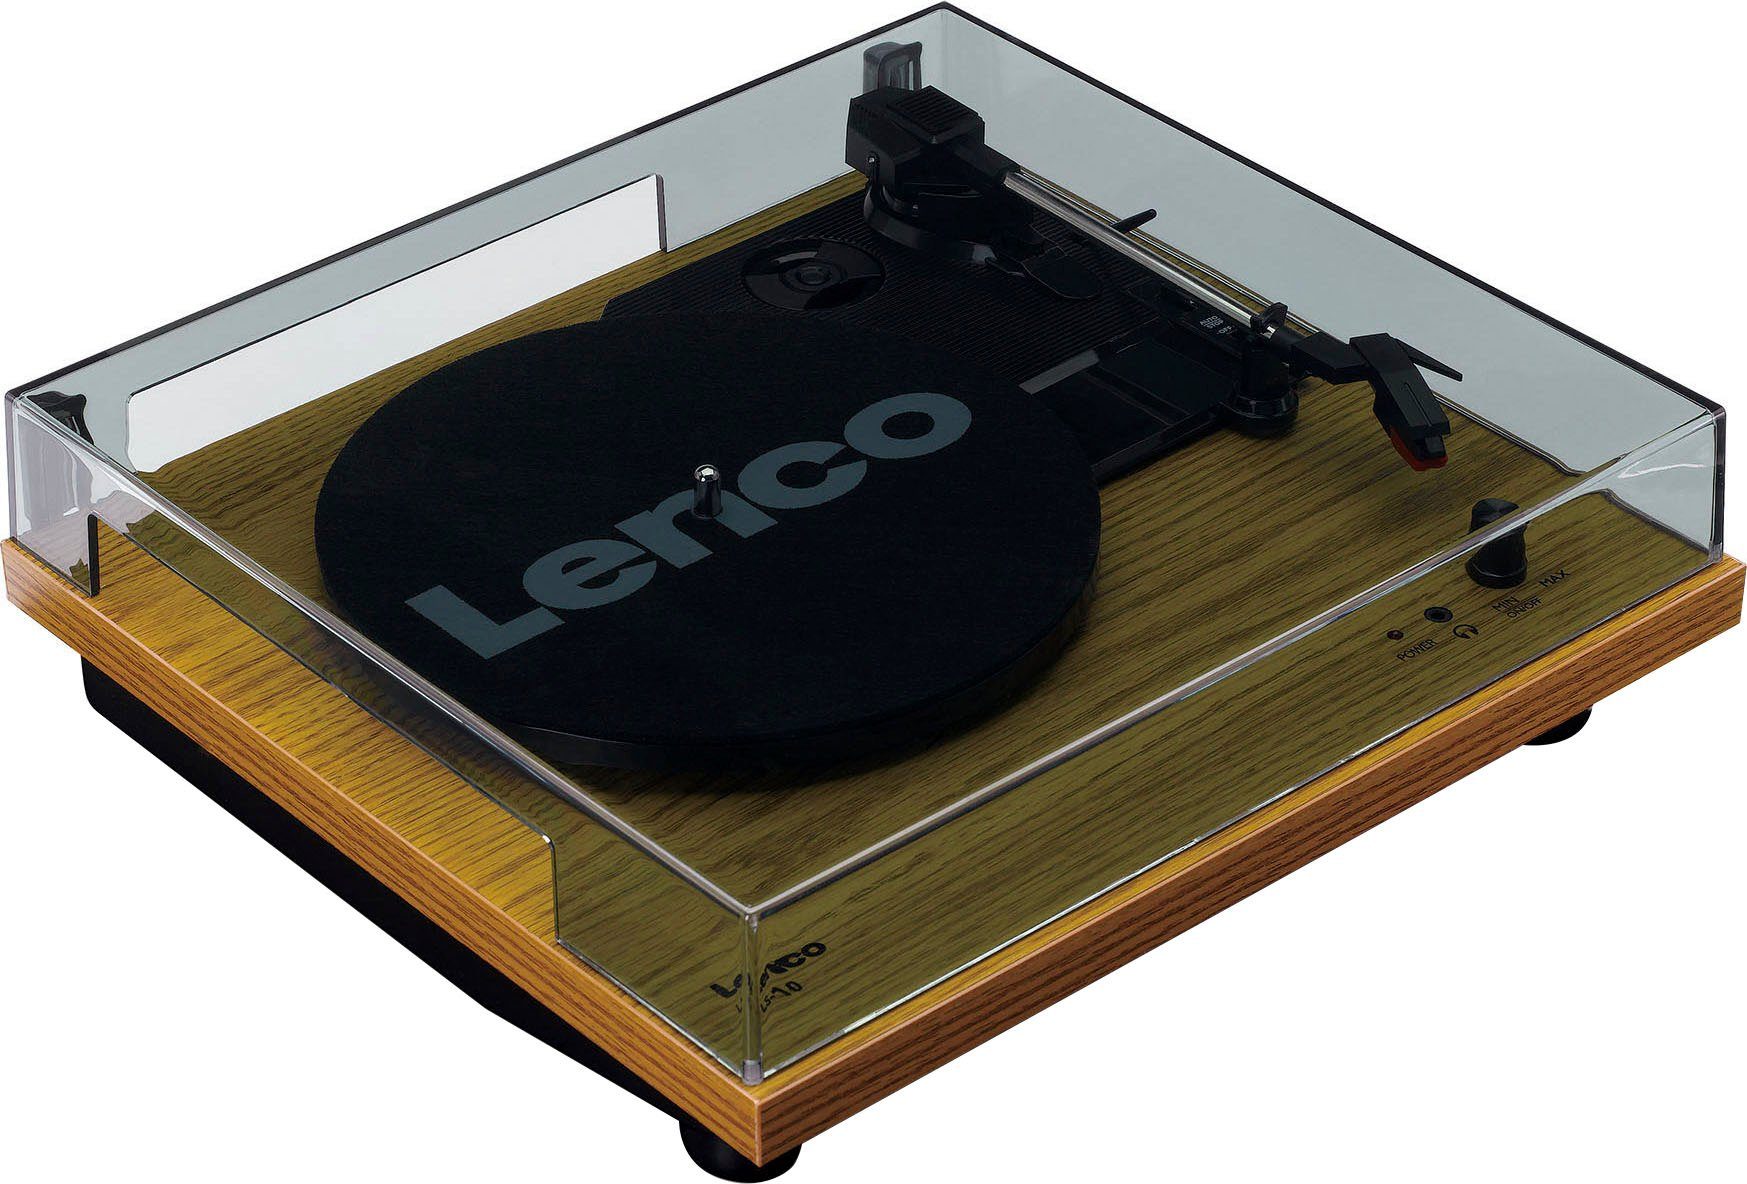 Lenco LS-10WD Plattenspieler mit Plattenspieler (Weiß/Holz) Lautsprechern (Riemenantrieb)